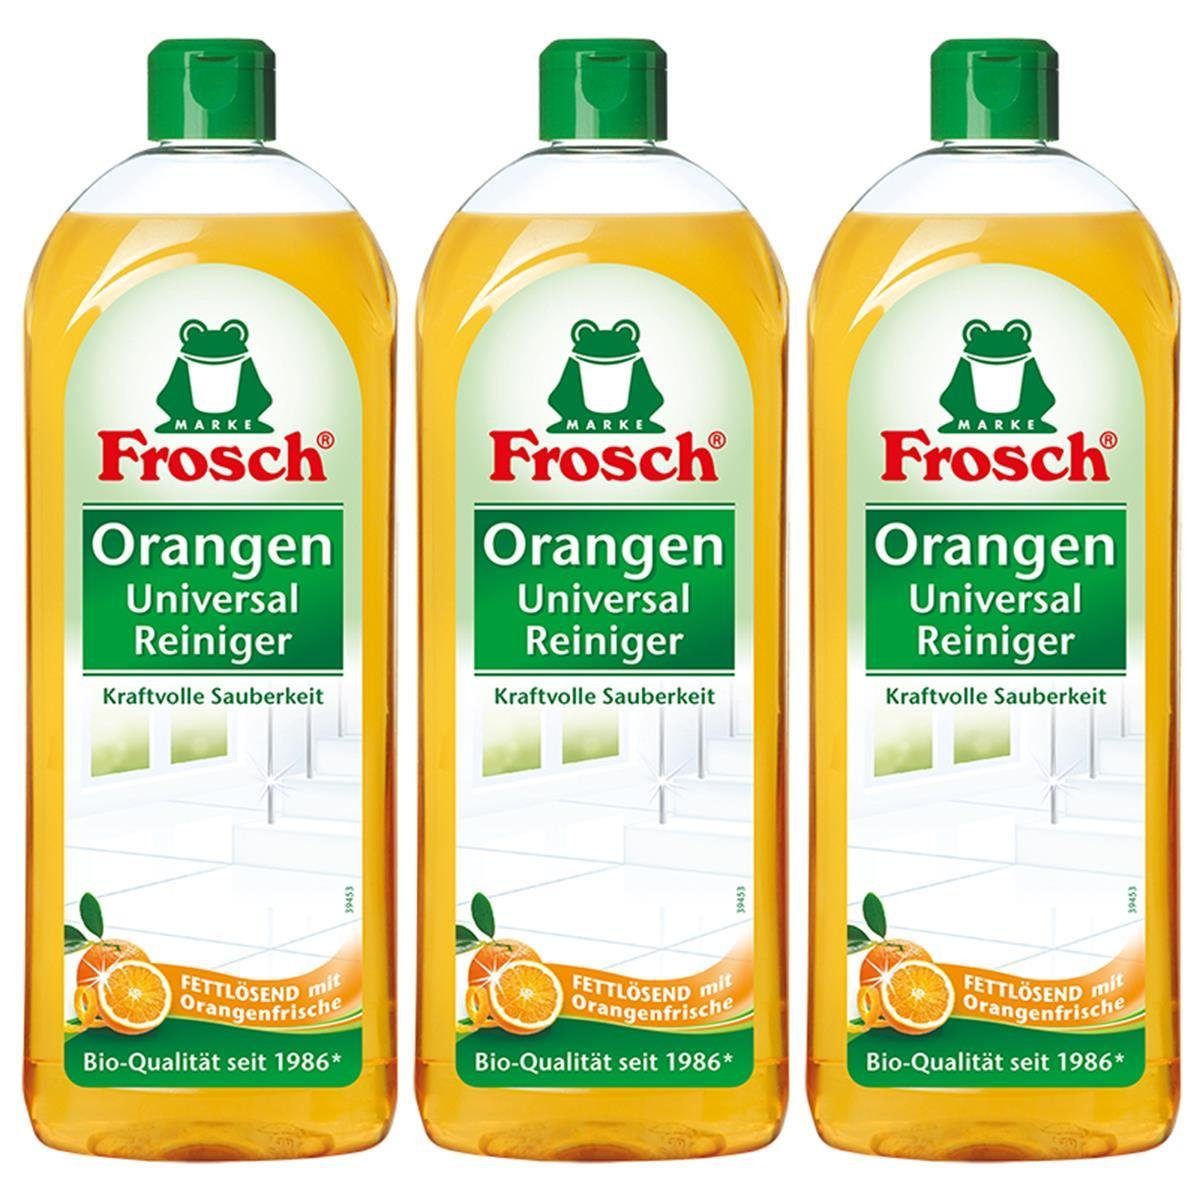 [Hohe Qualität, niedriger Preis] FROSCH 3x Orangen ml Universal 750 Frosch Allzweckreiniger Reiniger